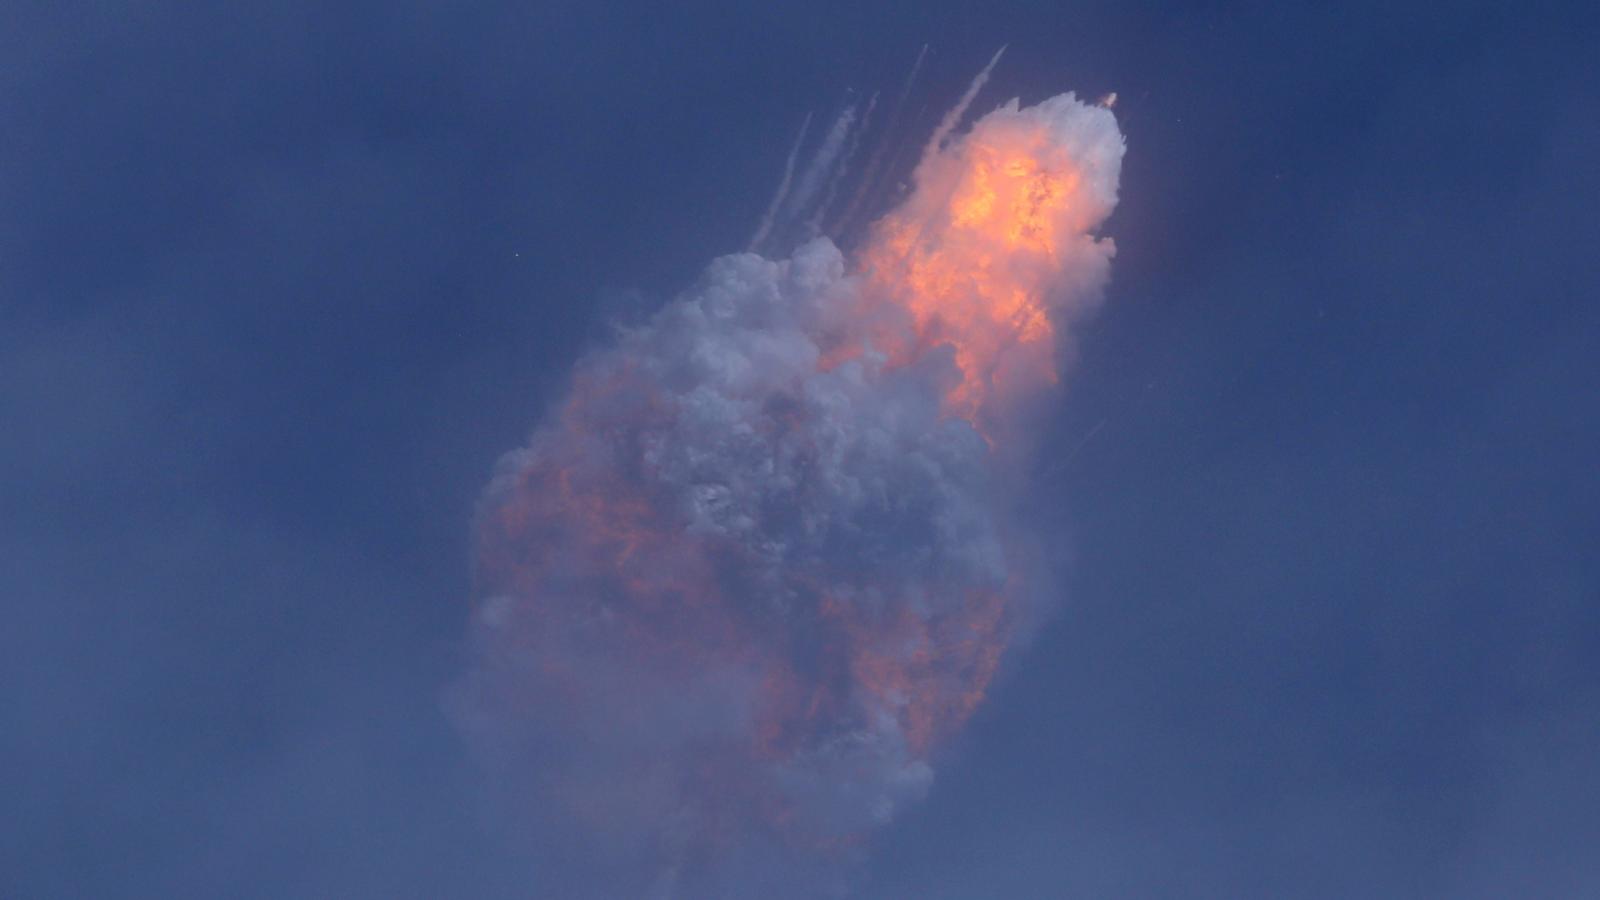 Spacex Succeeds In Launch Escape Test Quartz